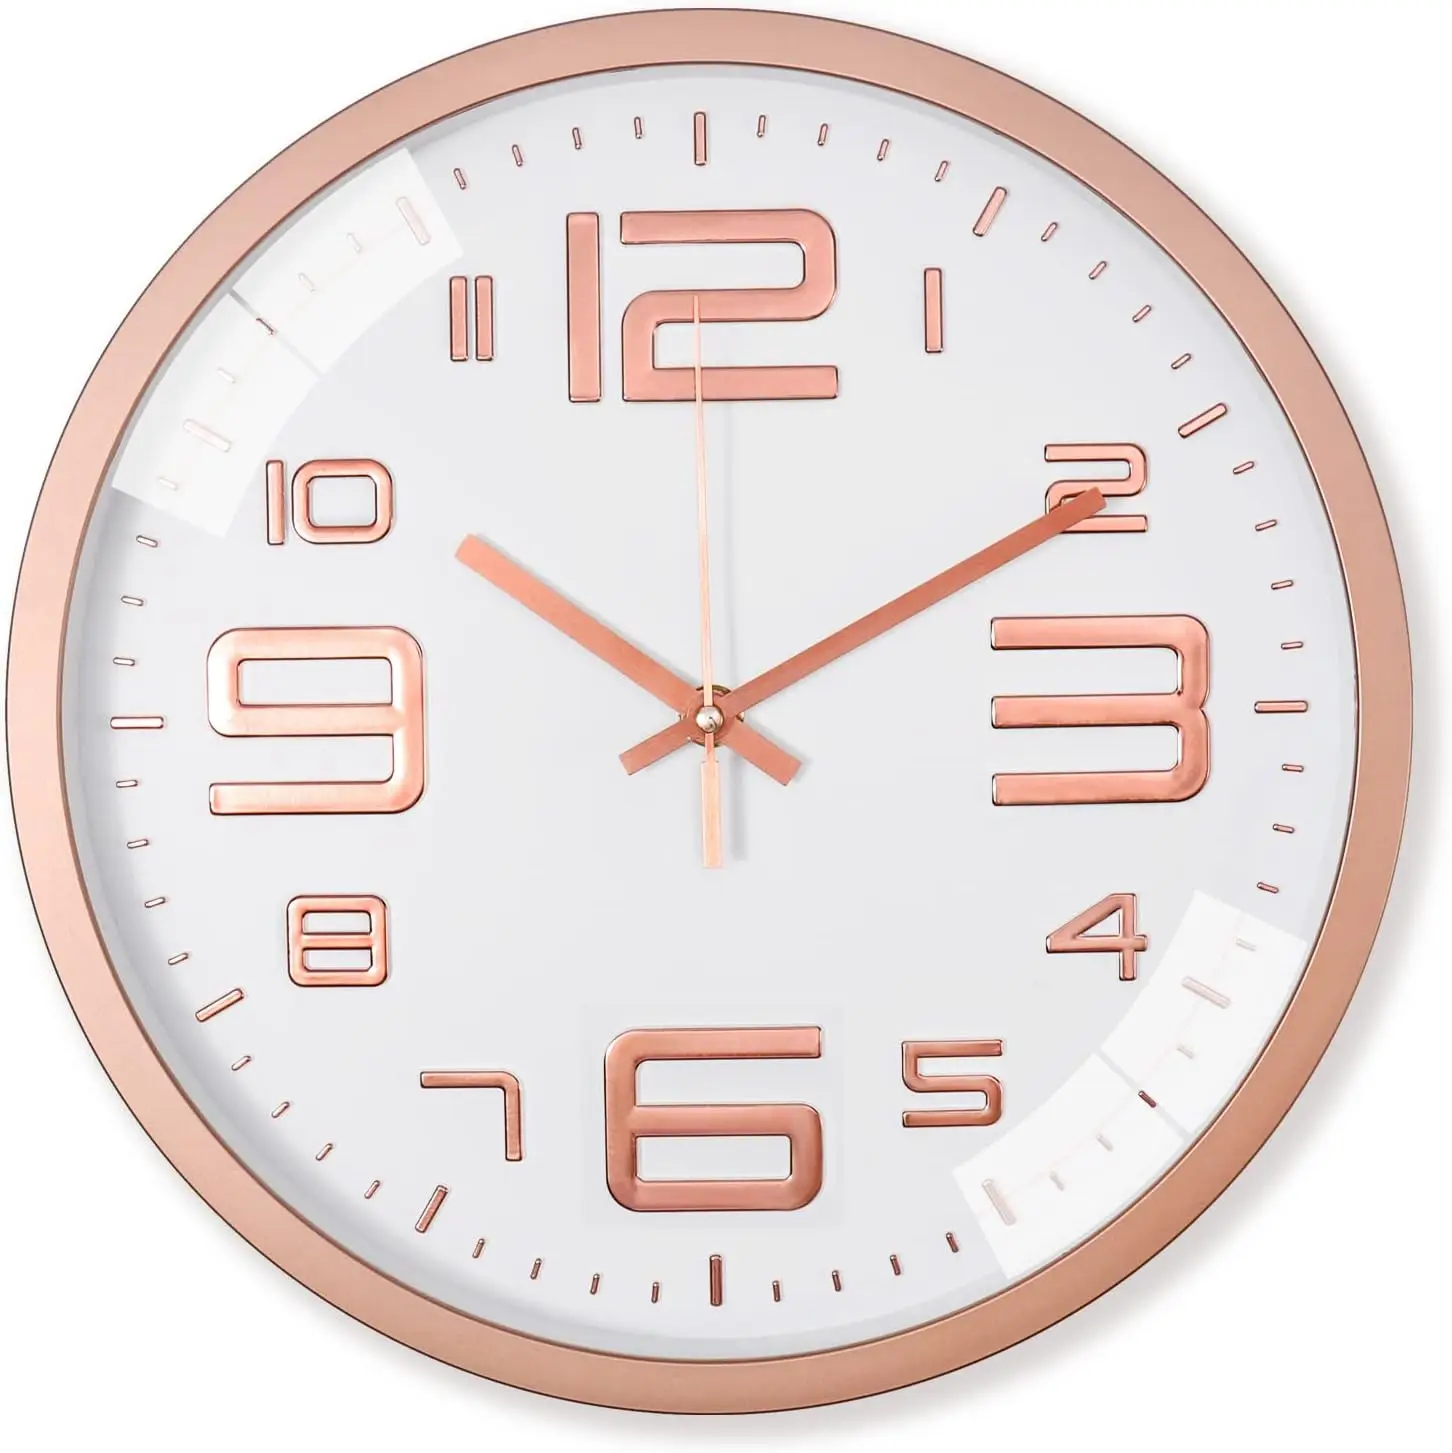 

Reloj de Pared Silencioso 30 cm Relojes Salon de Pared Moderno Grandes Reloj de Cuarzo Redondo -Ticking Reloj de Cocina Oficina